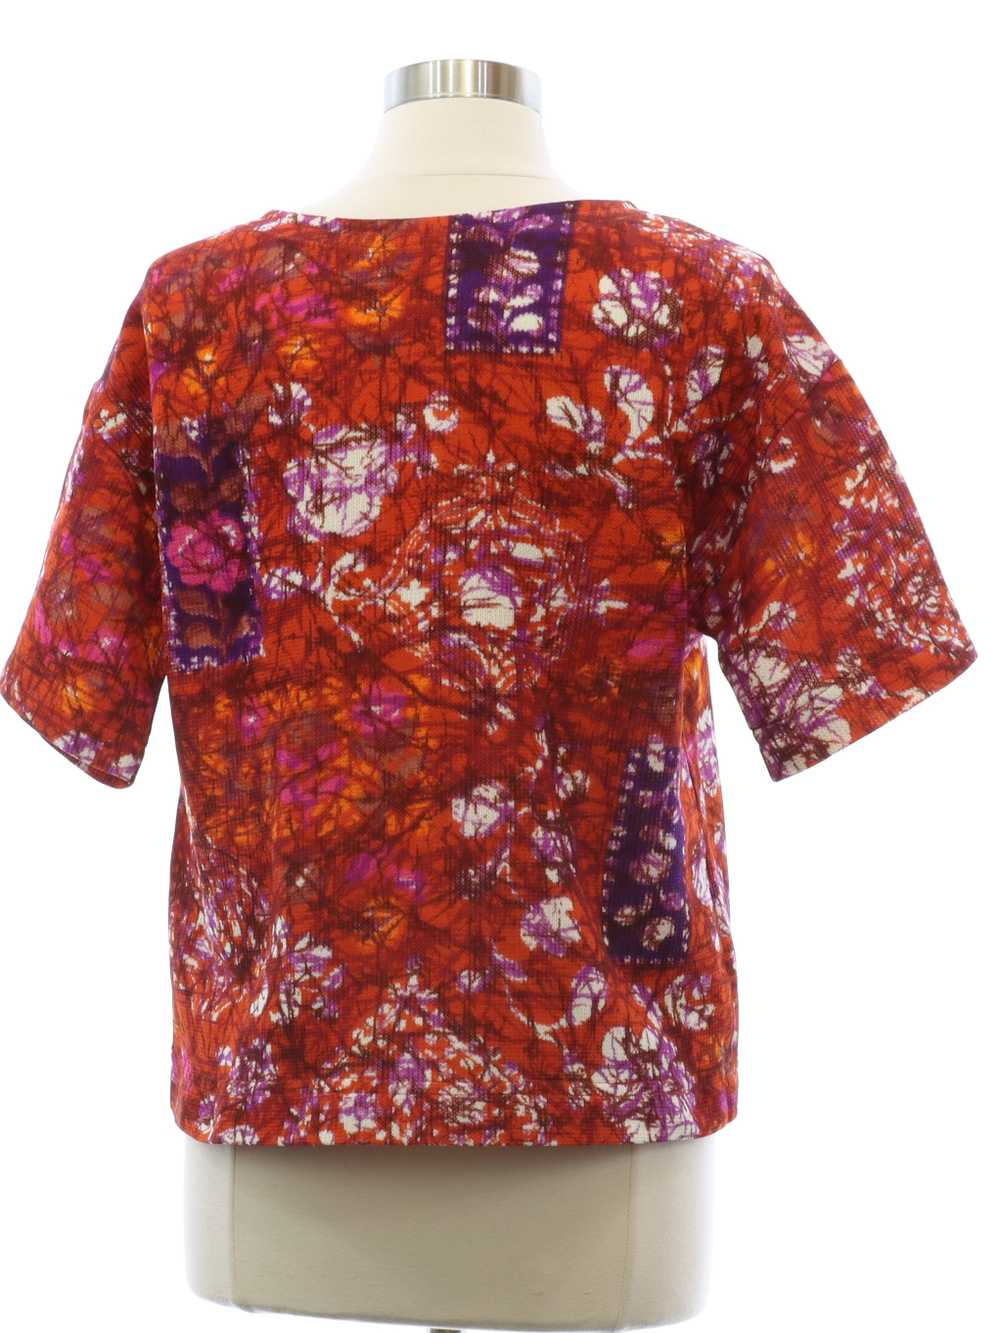 1970's Womens Mod Knit Shirt - image 3